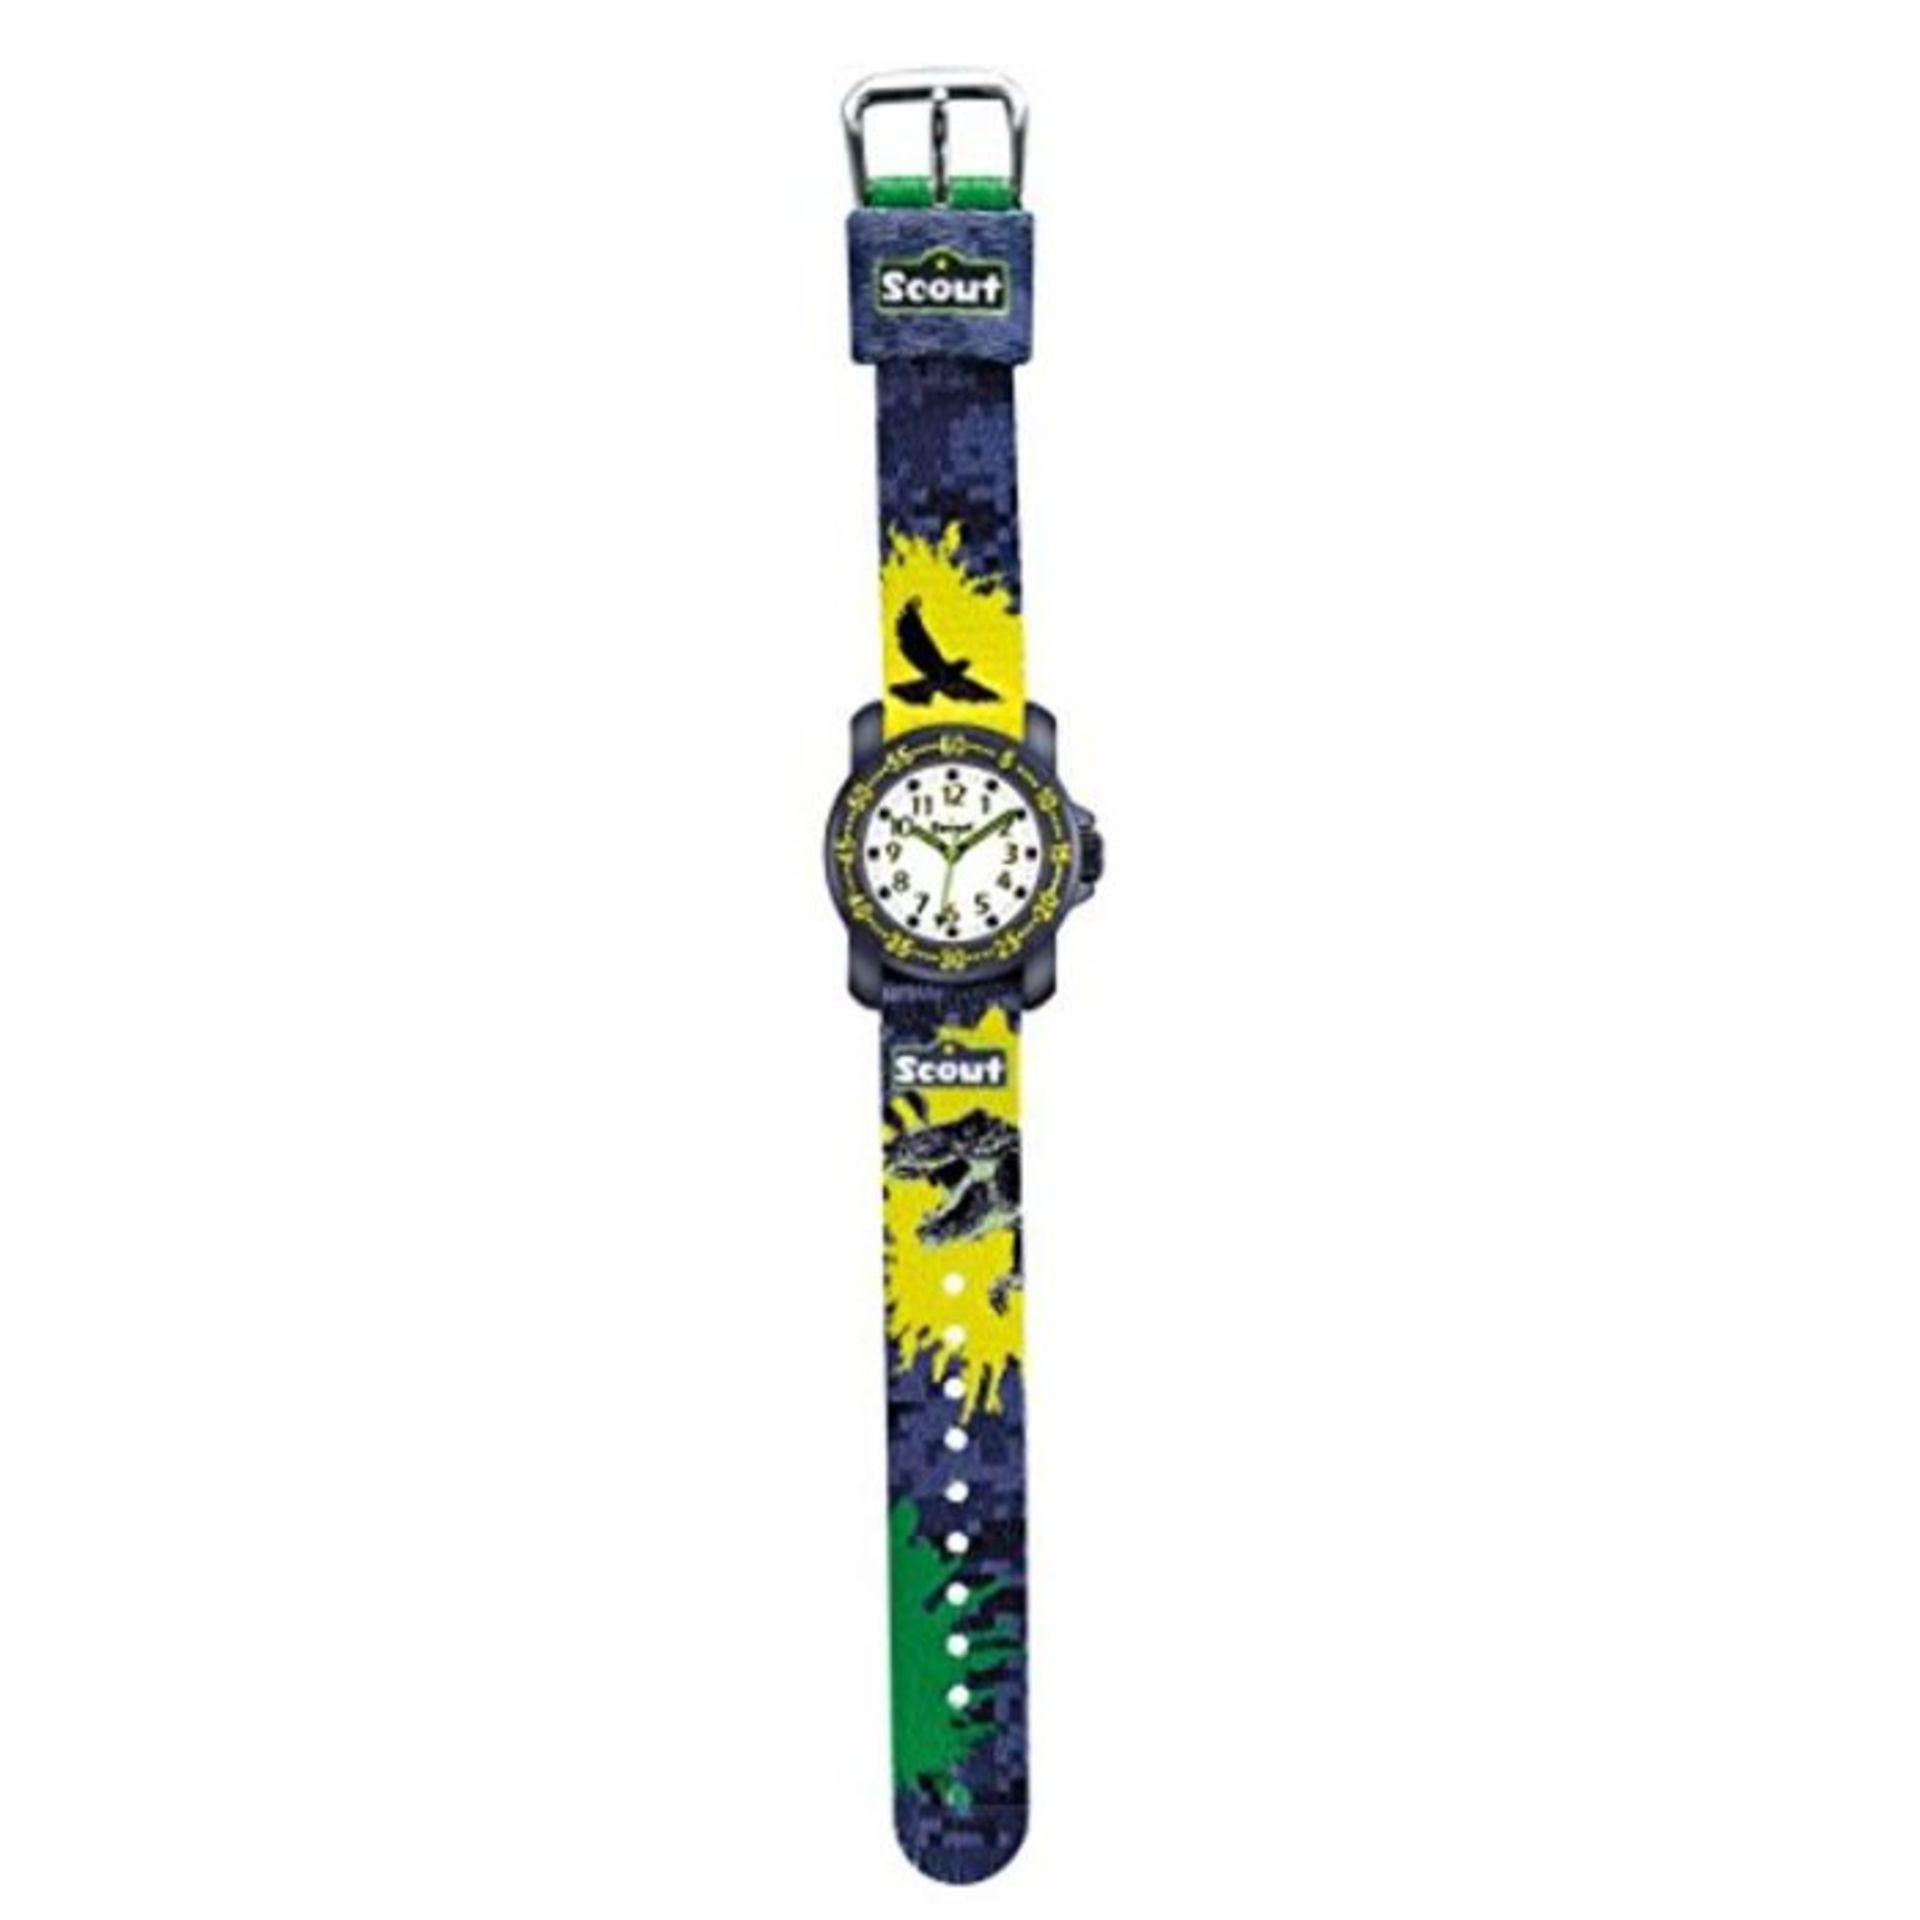 Scout - Boy's Watch - 280376039